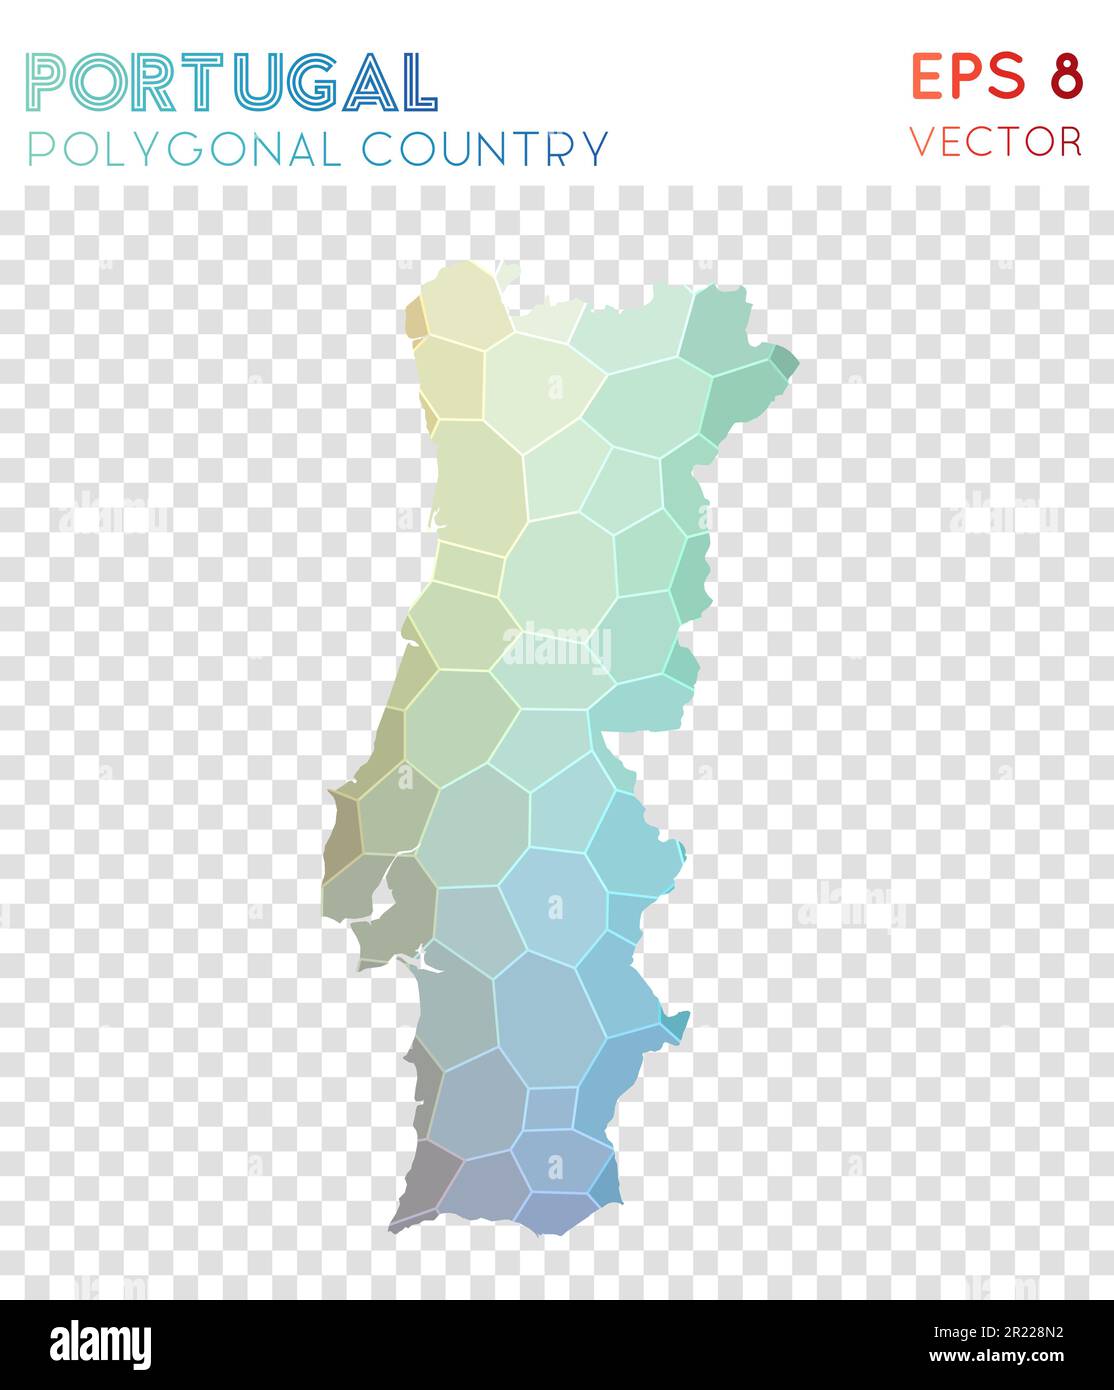 Vieleckige Karte Portugals, Land im Mosaikstil. Ansprechendes Design mit niedrigem Poly-Stil und modernem Design. Polygonale Karte Portugals für Infografiken oder Präsentationen. Stock Vektor